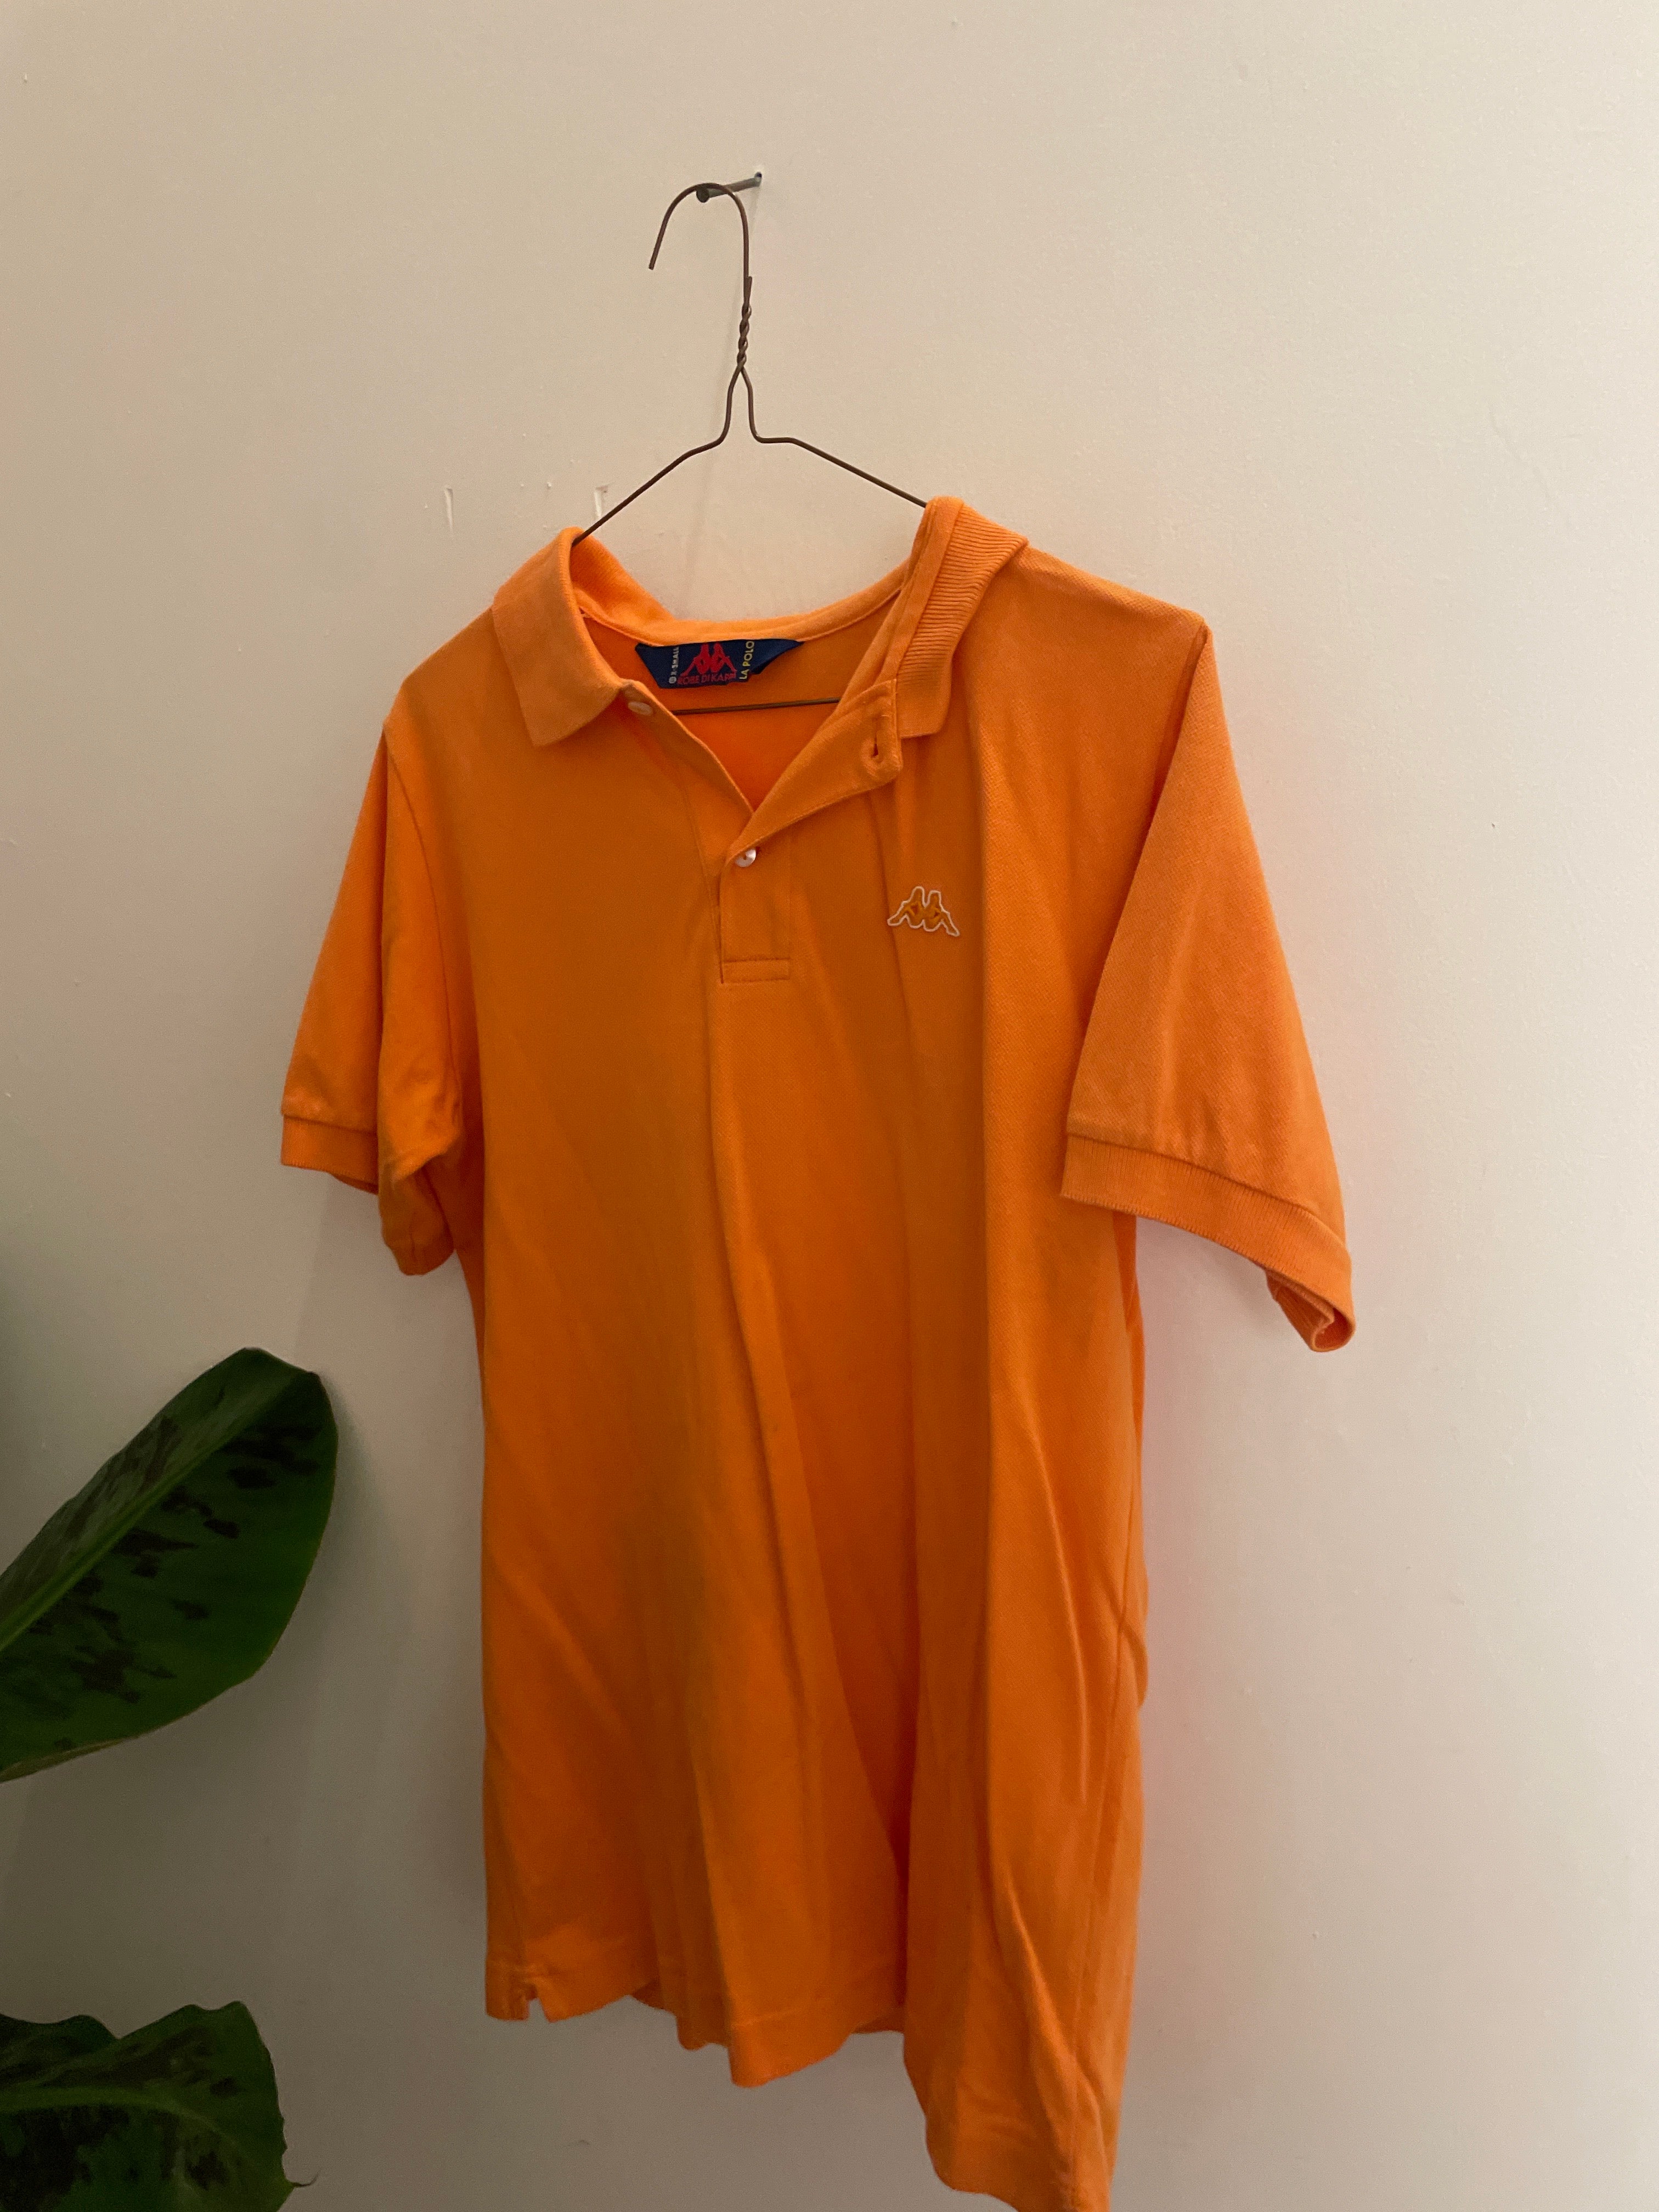 Vintage Kappa orange mens polo shirt size XS